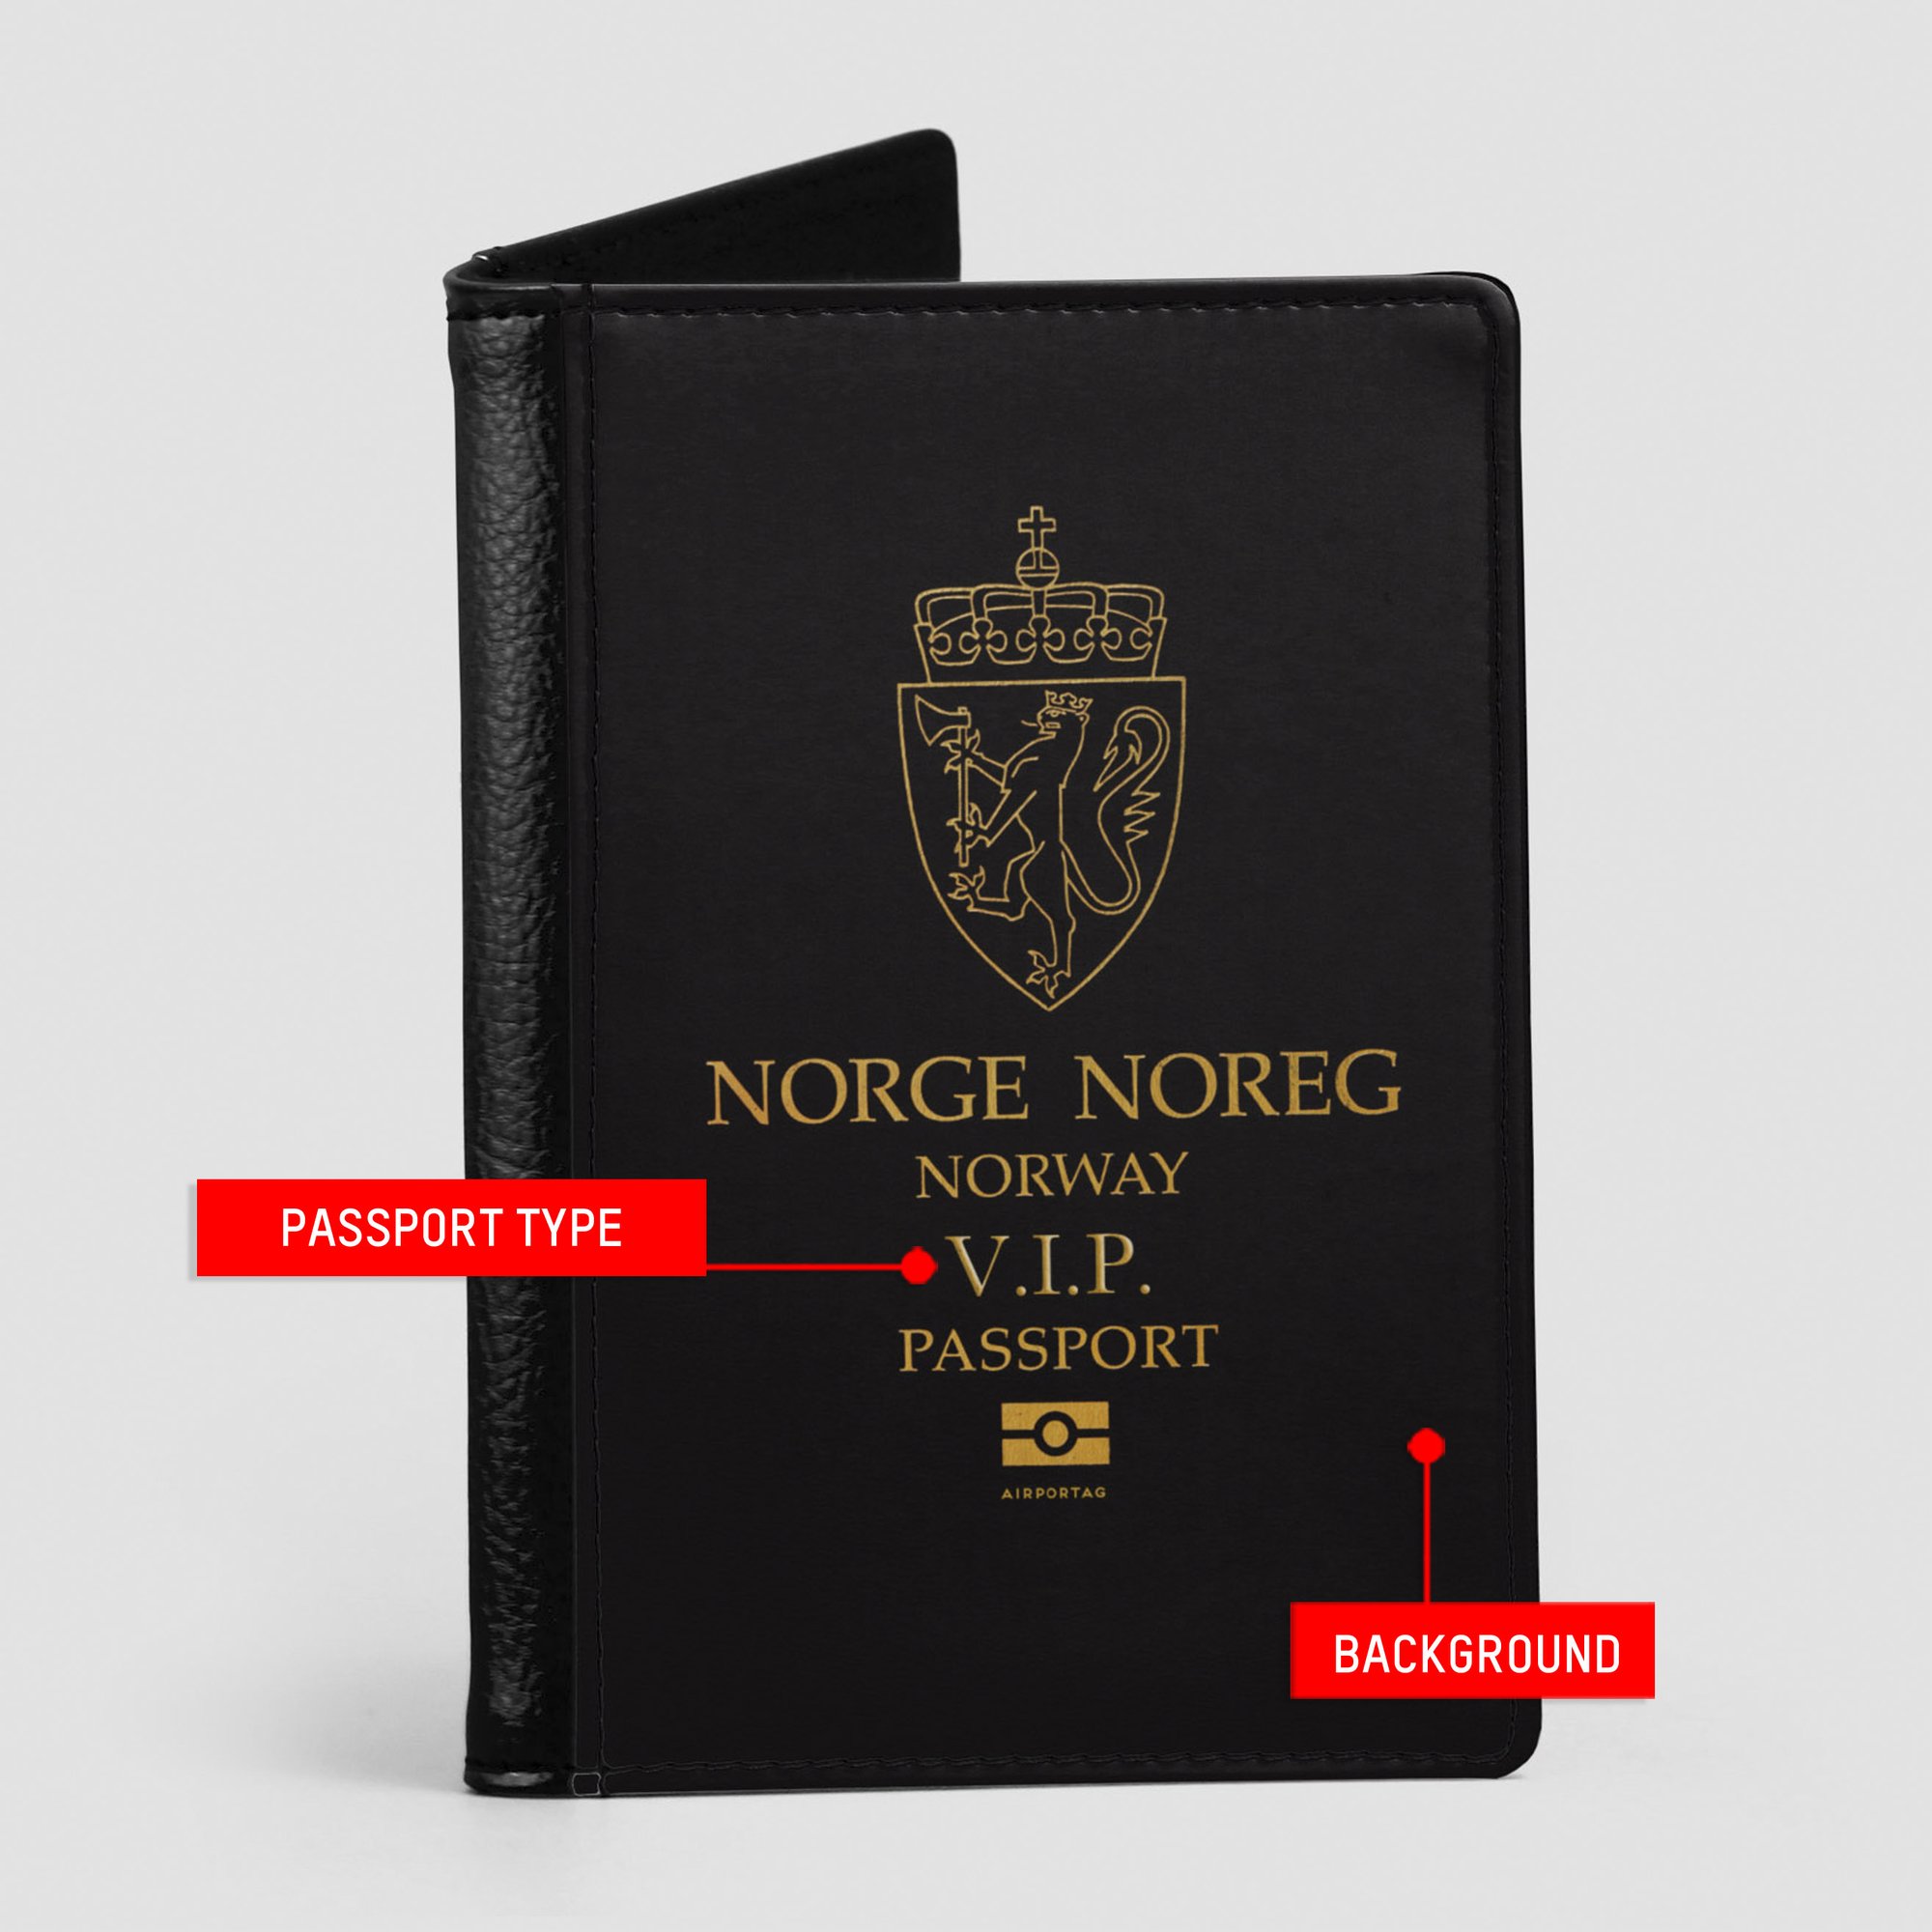 Passport Cover - Norway Passport - Airportag